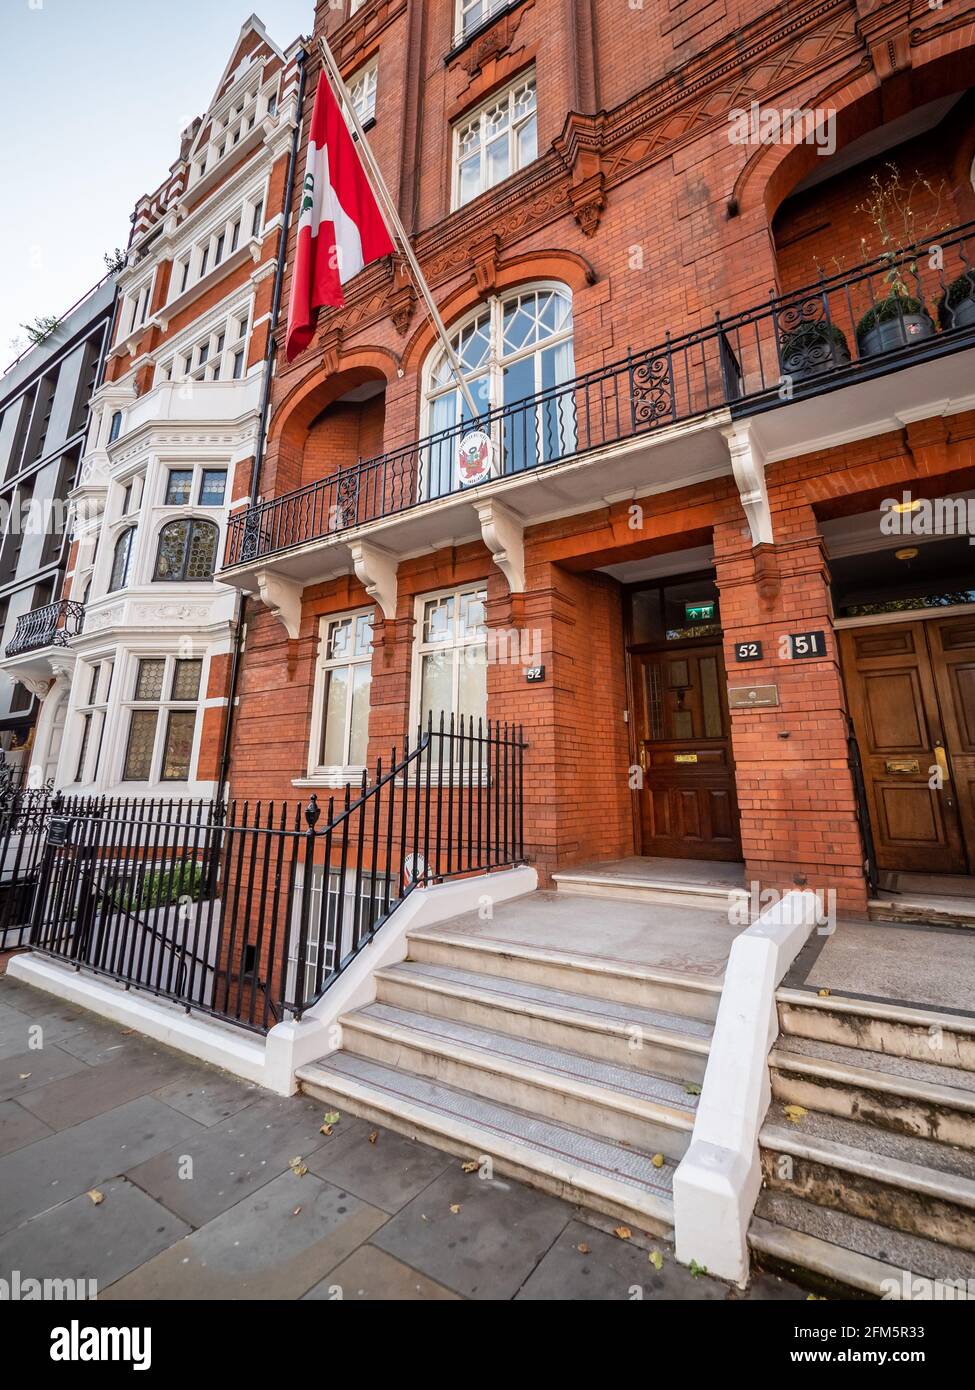 Ambassade de la République du Pérou, Londres. L'ambassade du Pérou du Royaume-Uni avec son drapeau national et son écusson dans une grande maison de ville de Kensington à l'ouest de Londres. Banque D'Images